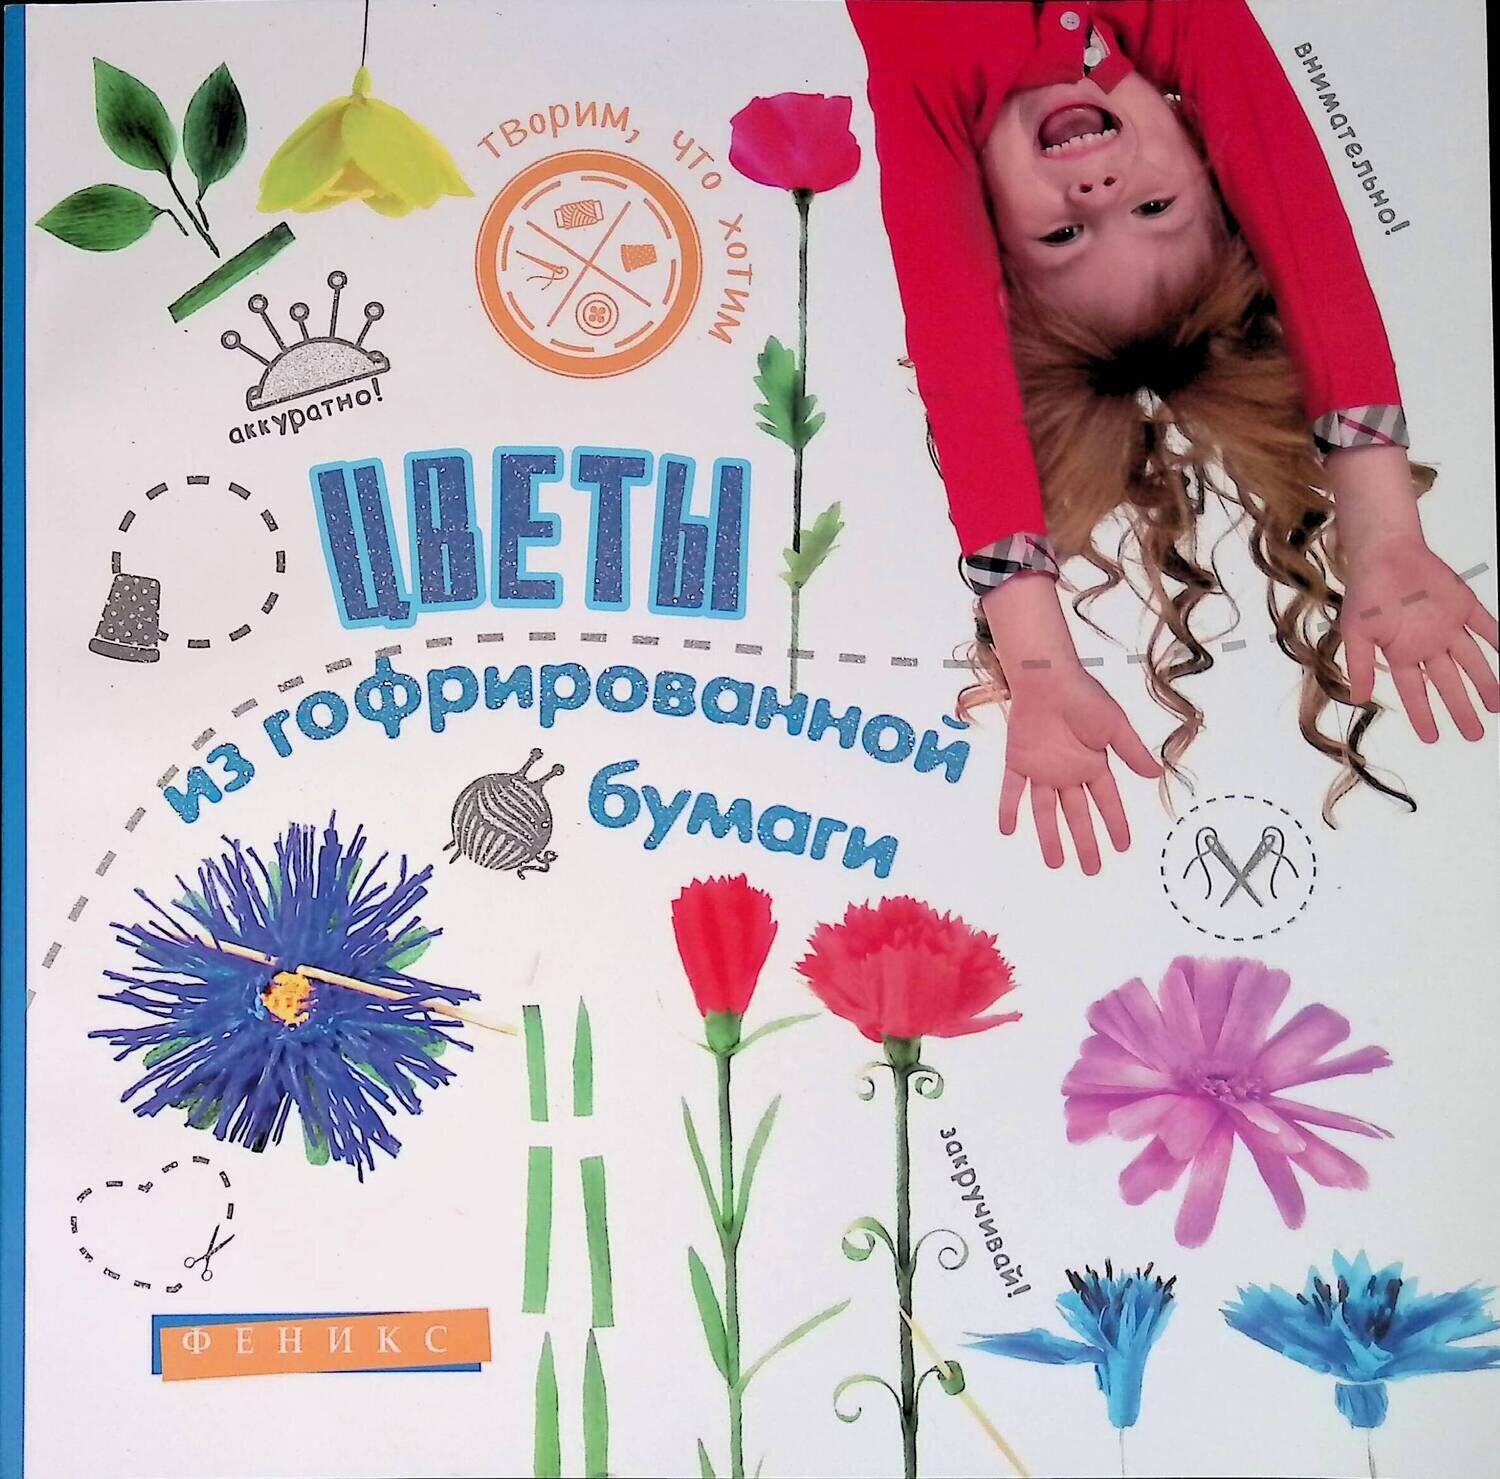 Цветы из гофрированной бумаги; Шерстюк Юлия Валерьевна